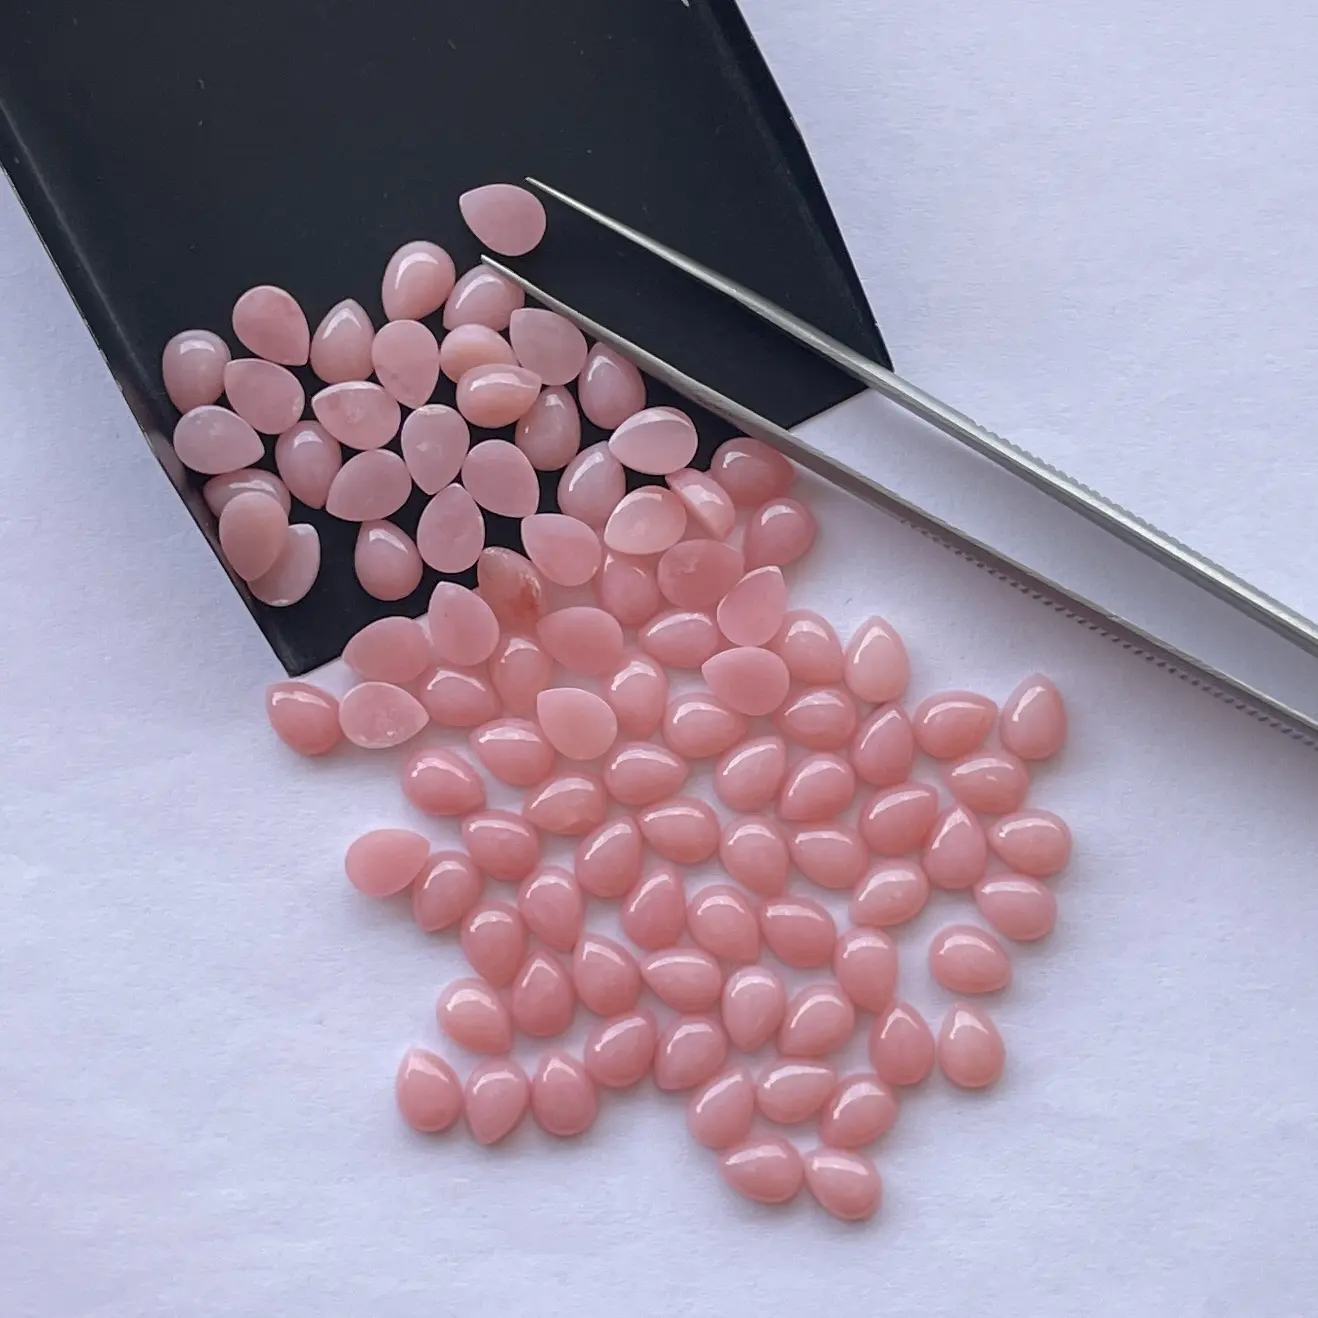 8x10mm naturale opale rosa pera liscia Cabochon sciolto fornitore di pietre preziose presso il rivenditore all'ingrosso prezzo Semi prezioso acquista la fabbrica Online